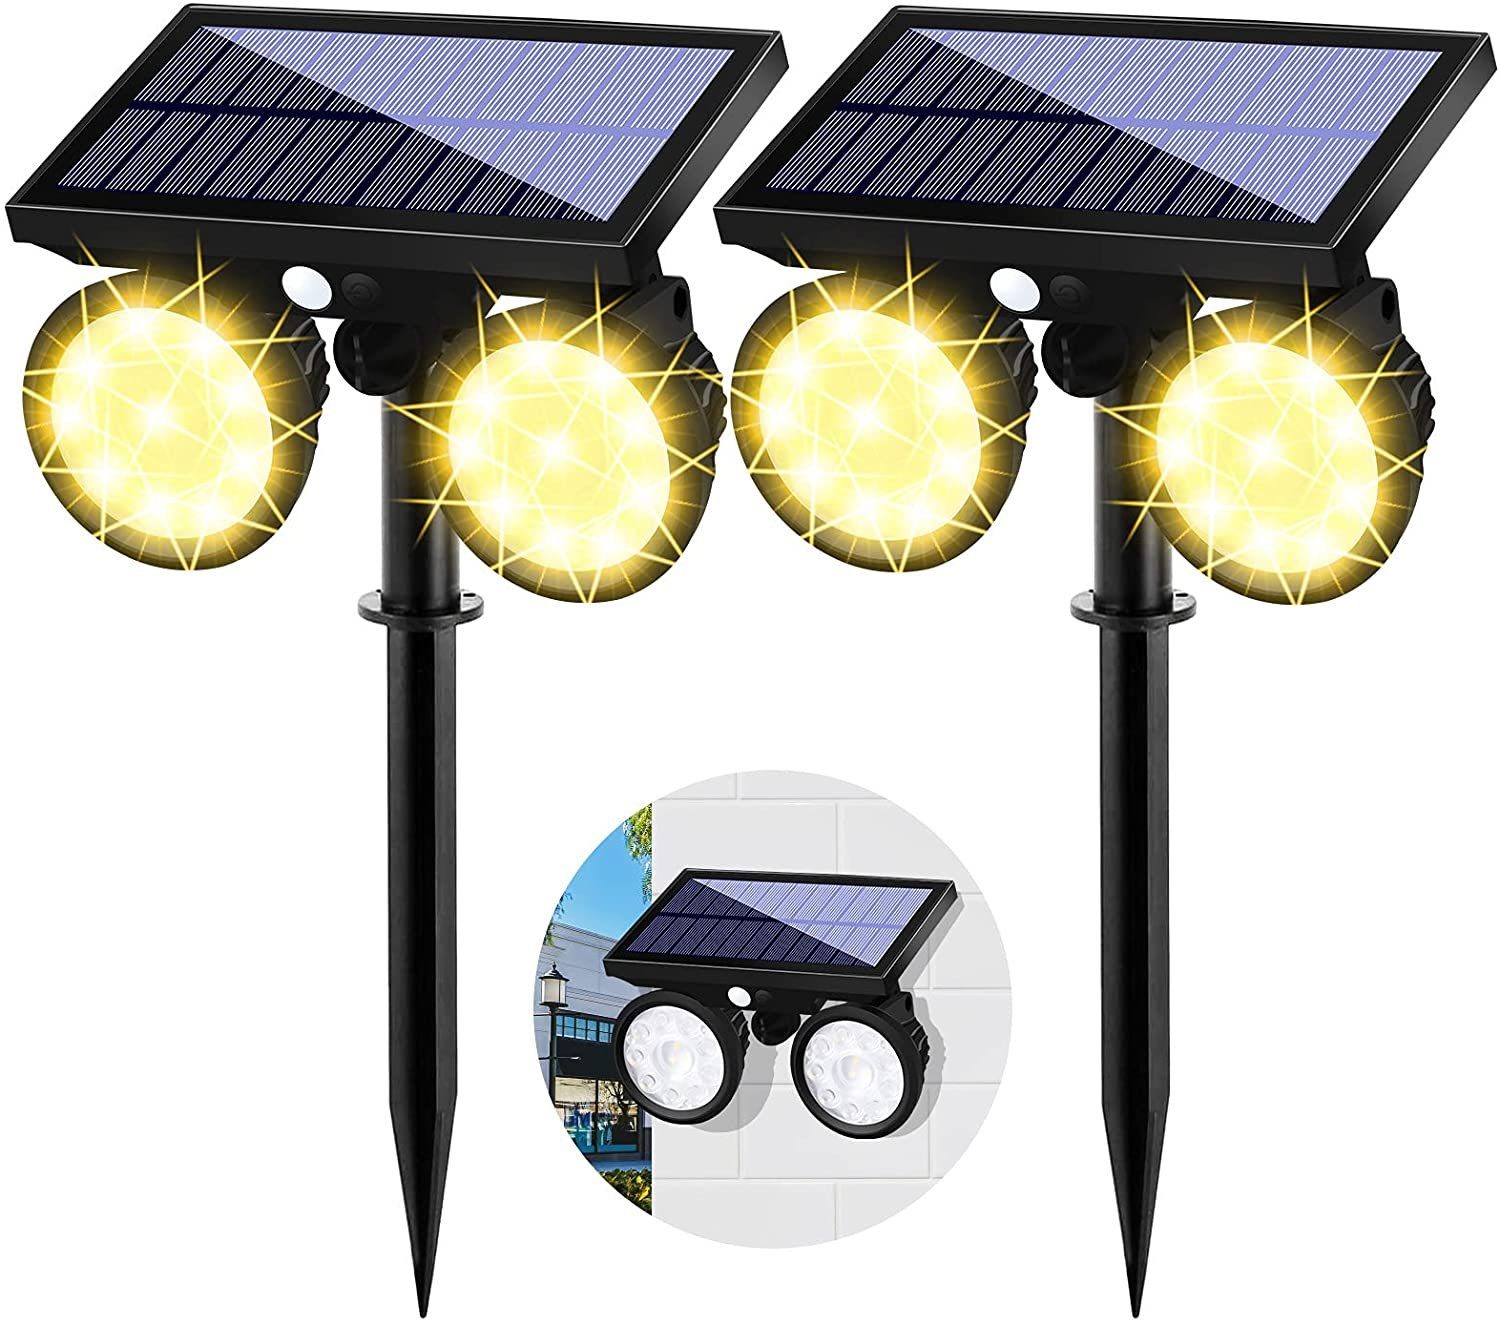 NEU LED Außenleuchte Doppel Solarstrahler Bewegungsmelder Solarleuchte Wandlampe 